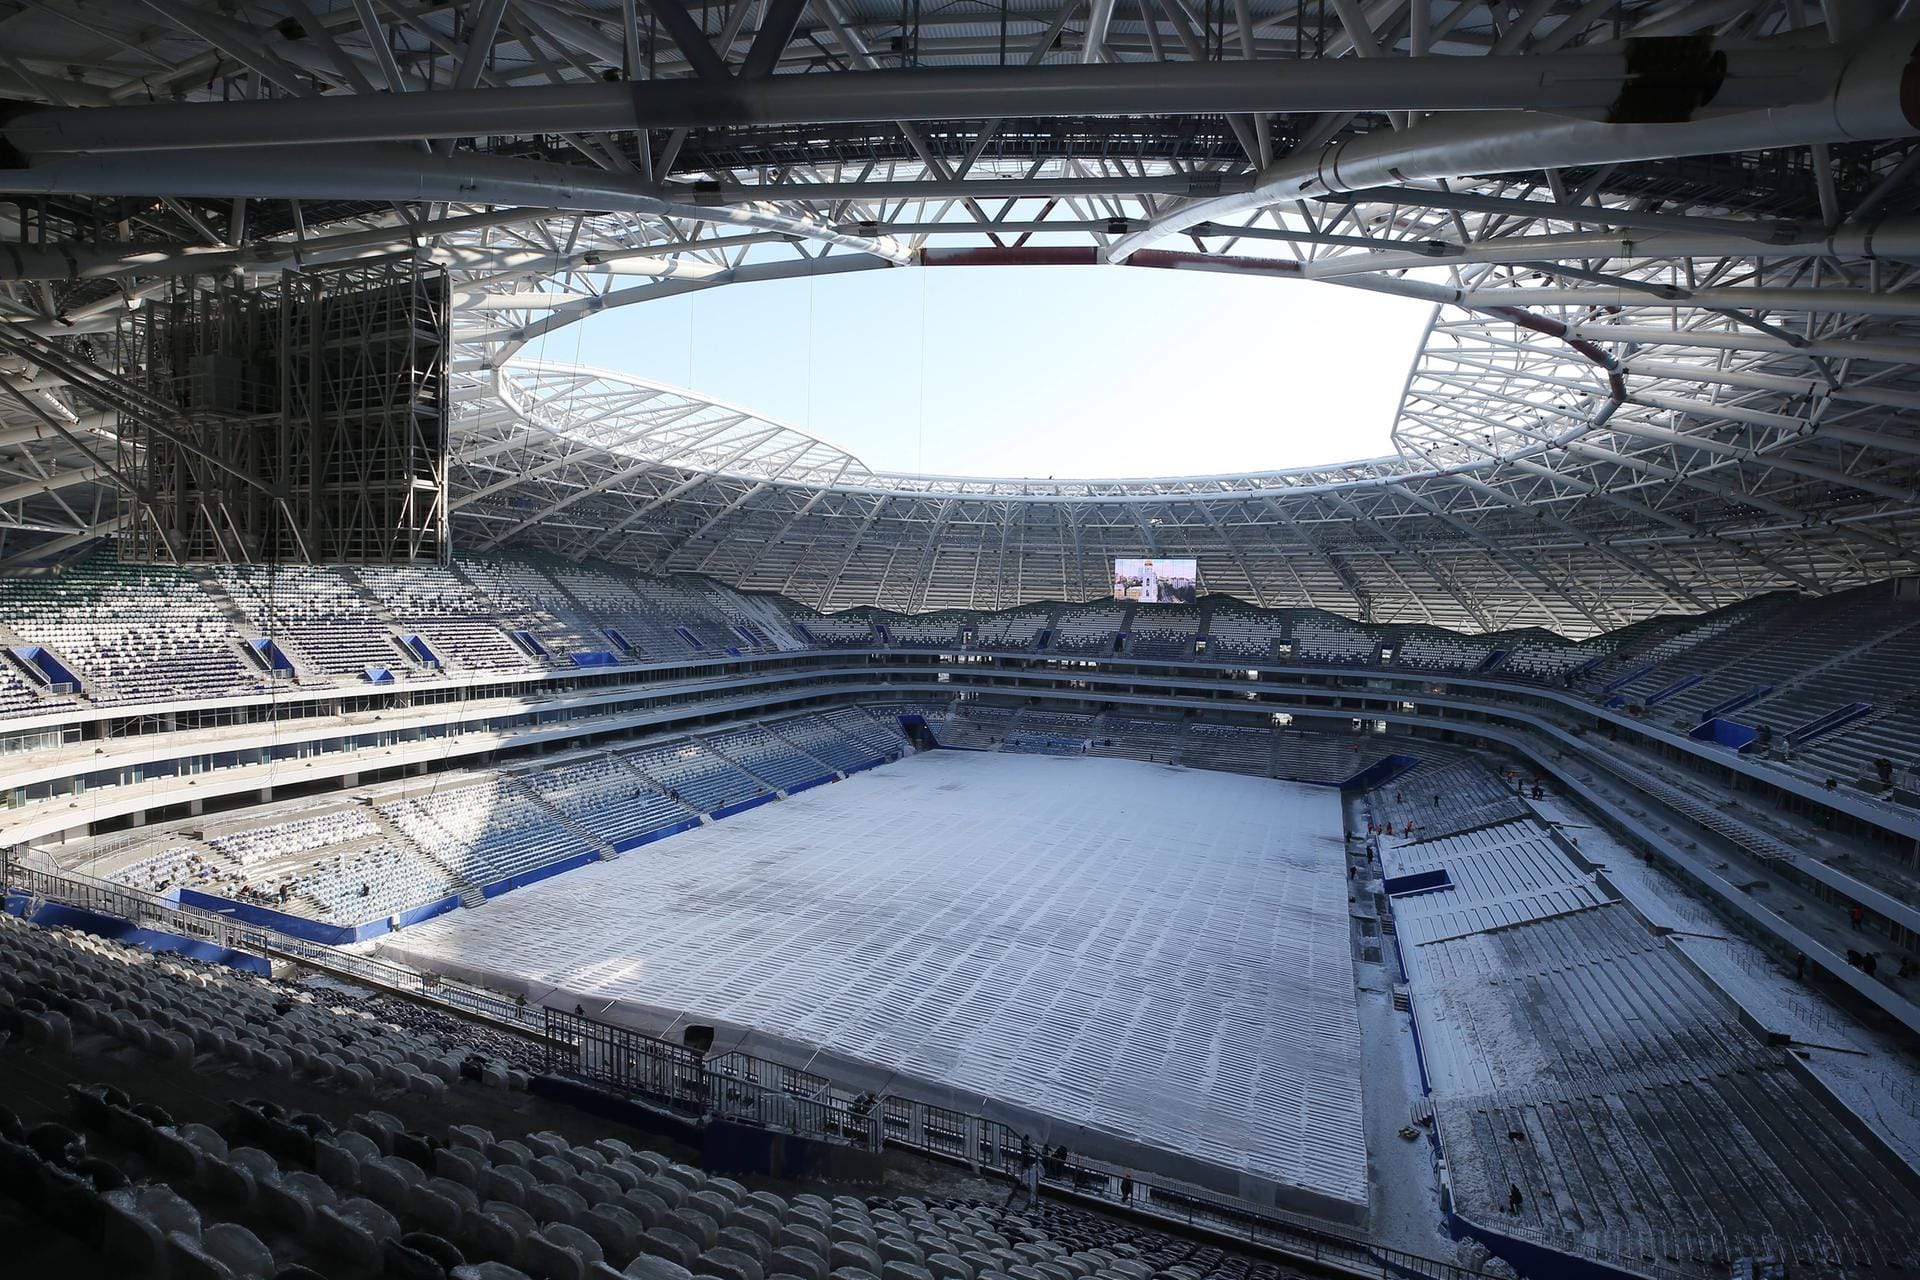 Stadion Samara: Die Besonderheit ist die 60 Meter hohe Glaskuppel, die die Arena überdacht und an die Weltraumfahrt erinnert. Die Metropole Samara soll damit als Tribut des Luft- und Raumfahrtzentrum Russlands gekennzeichnet sein.